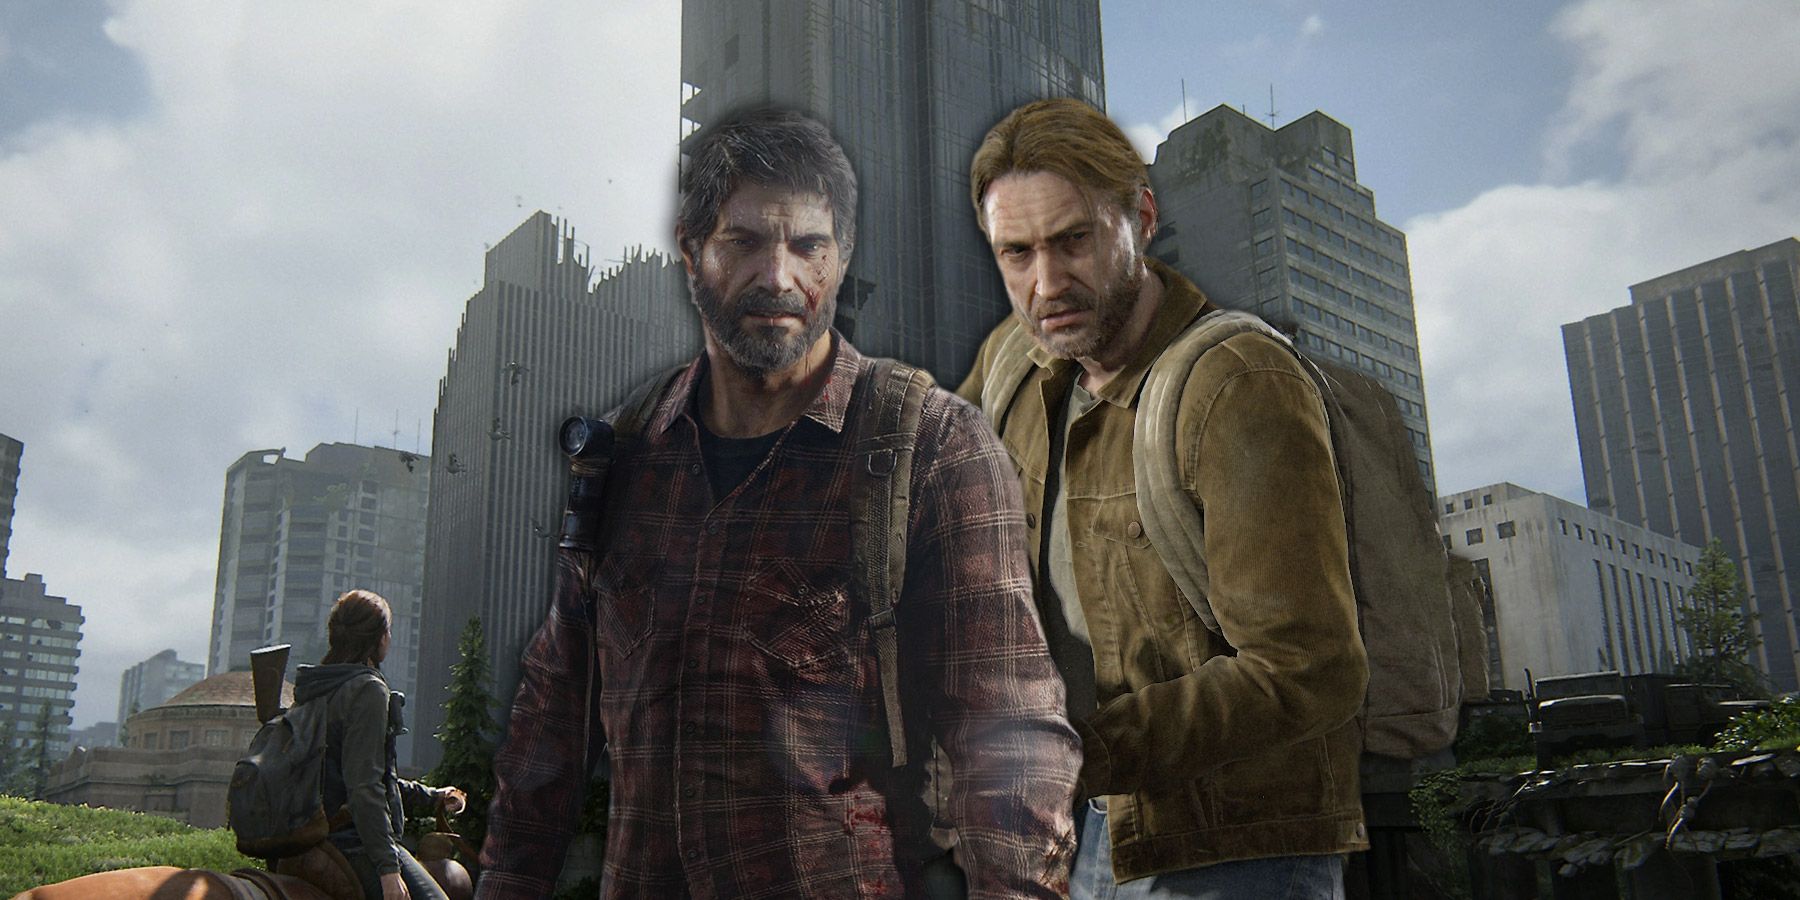 The Last of Us: O que aconteceu com Tommy?